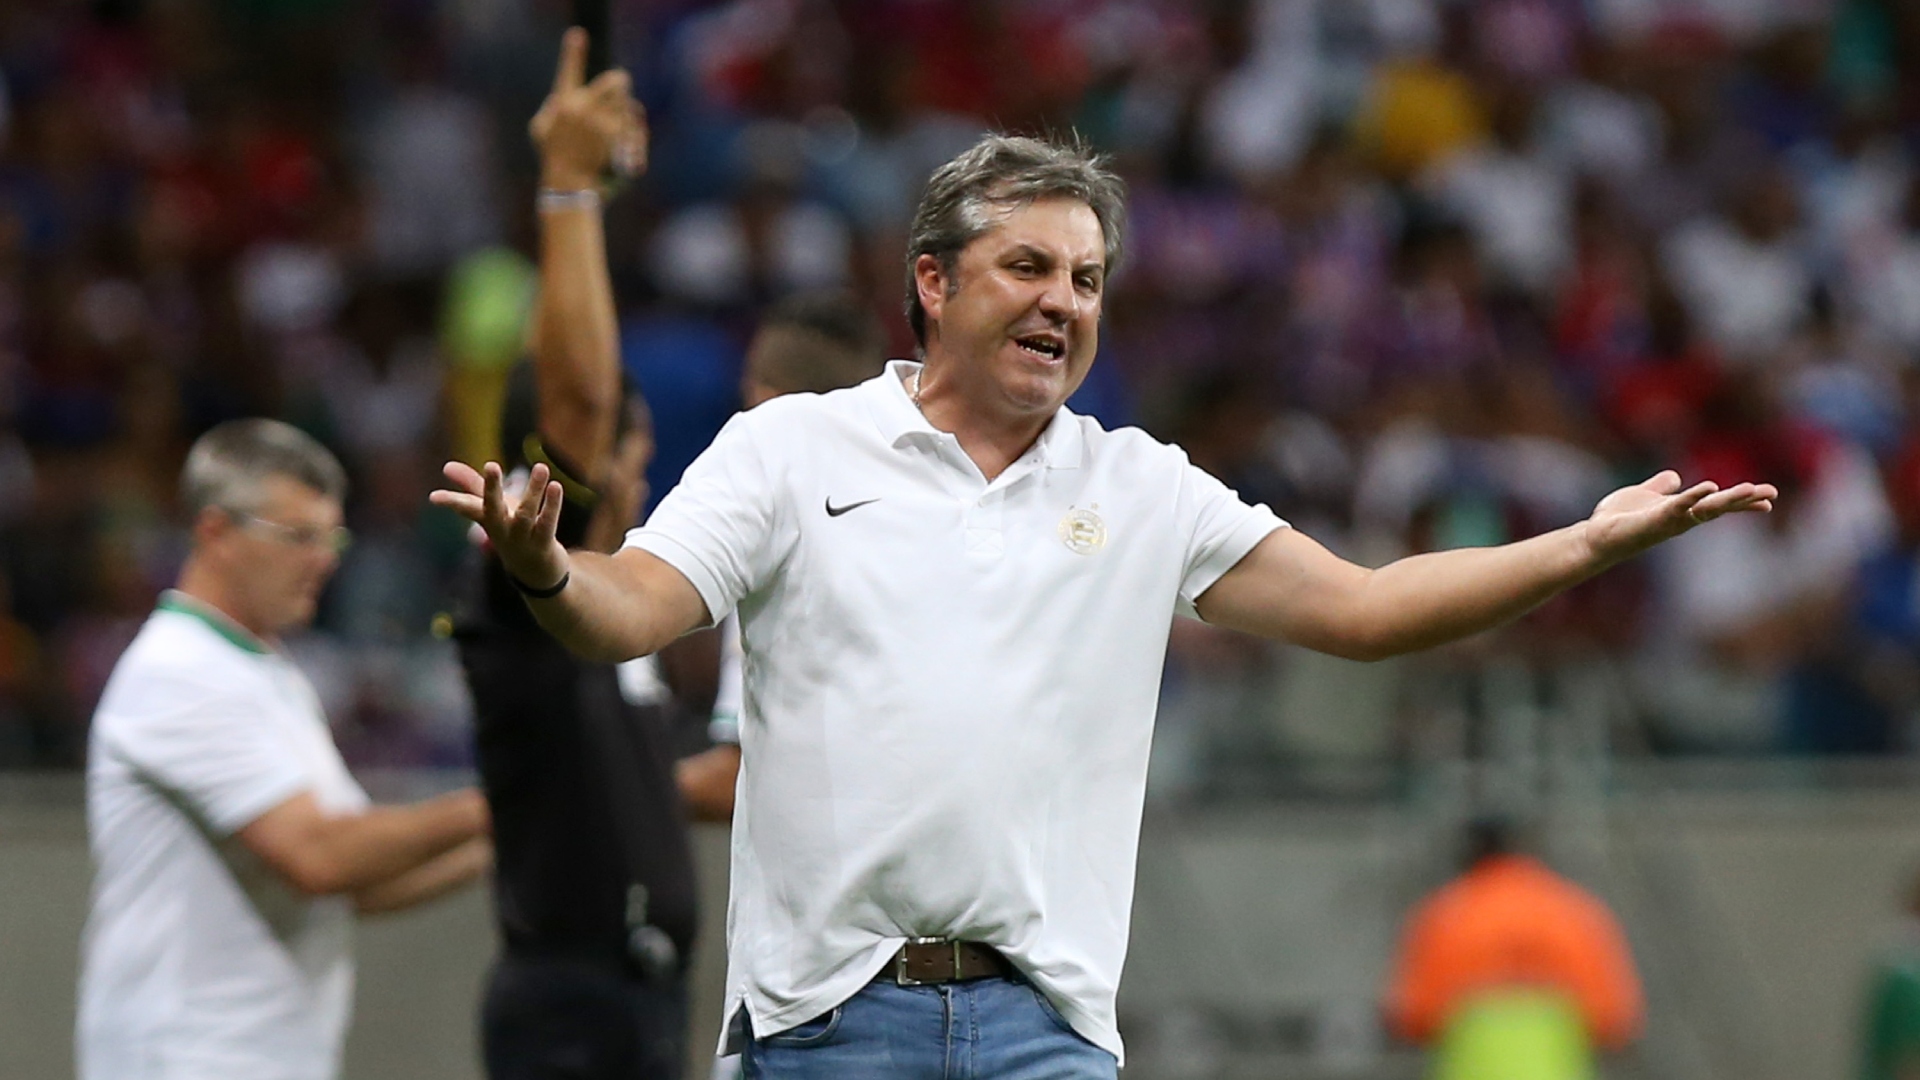 Botafogo fecha participação na Série B diante do Londrina - Jornal